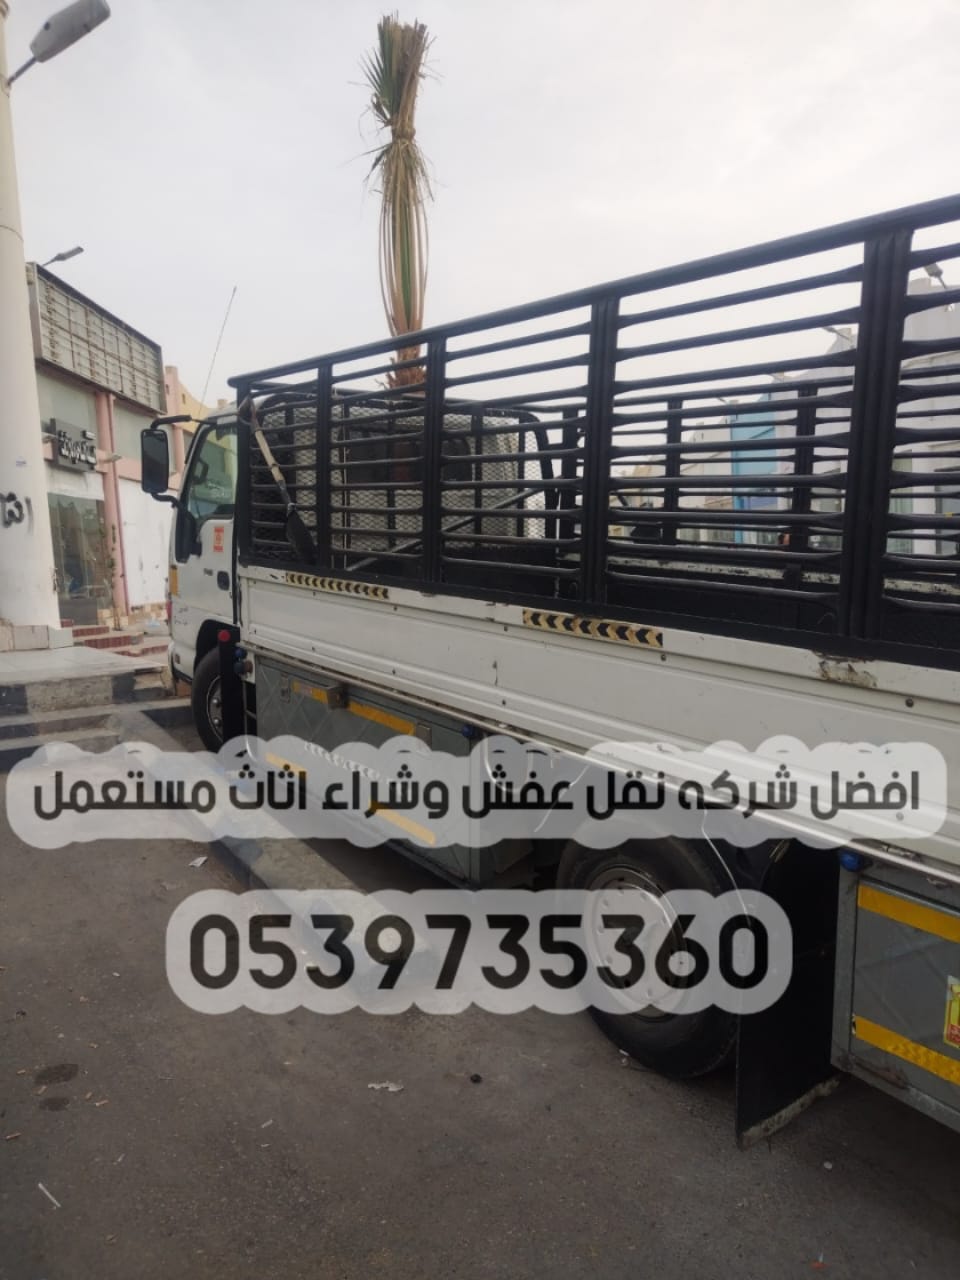 الرياض - دينا نقل عفش خارج الرياض 0539735360 توصيل الأثاث مشاوير 171061166175021